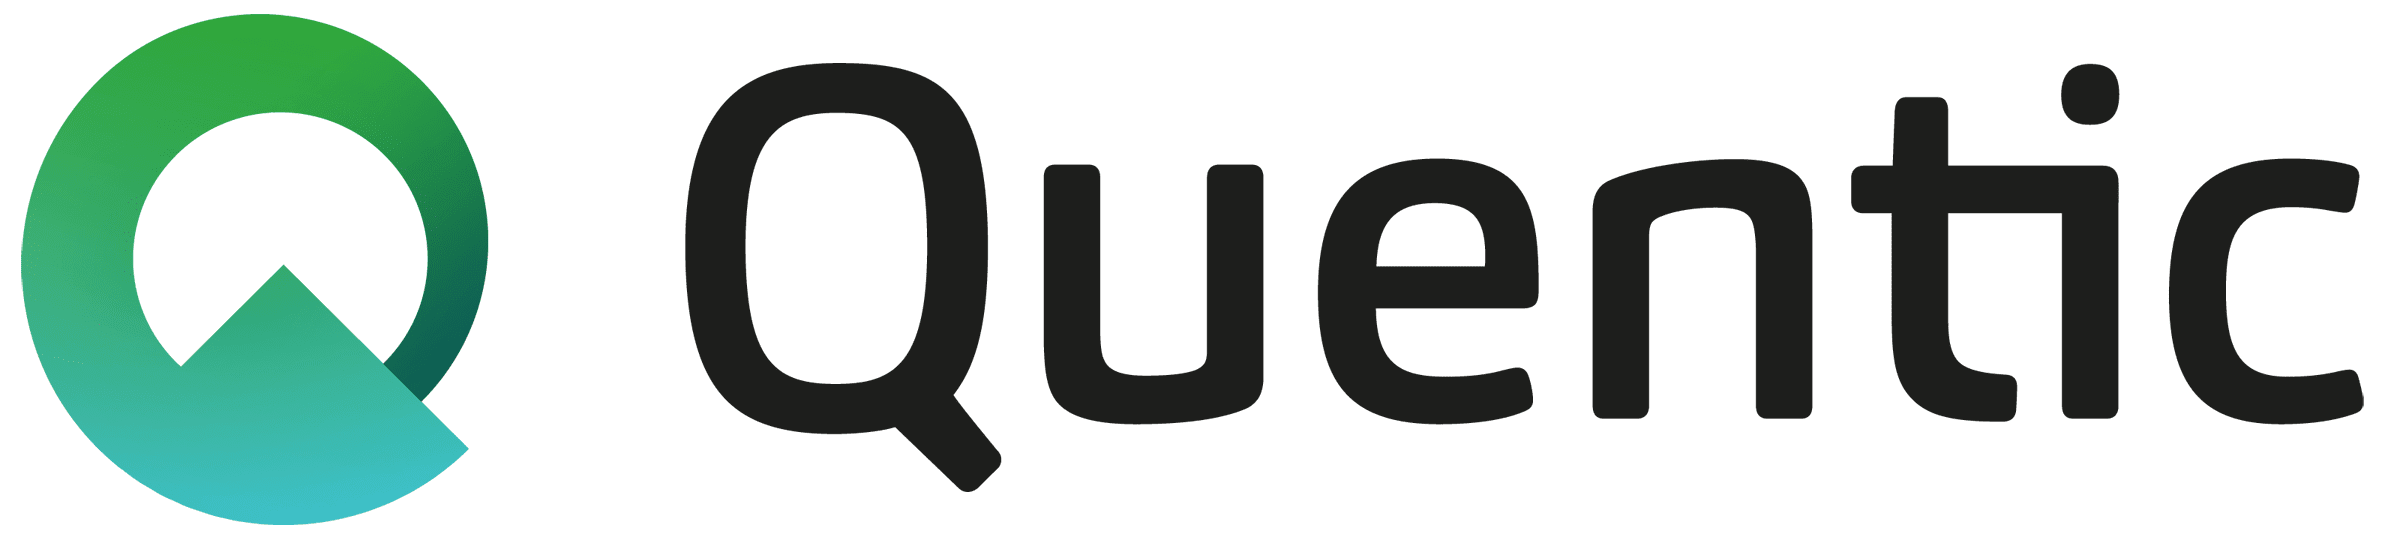 Quentic-logo